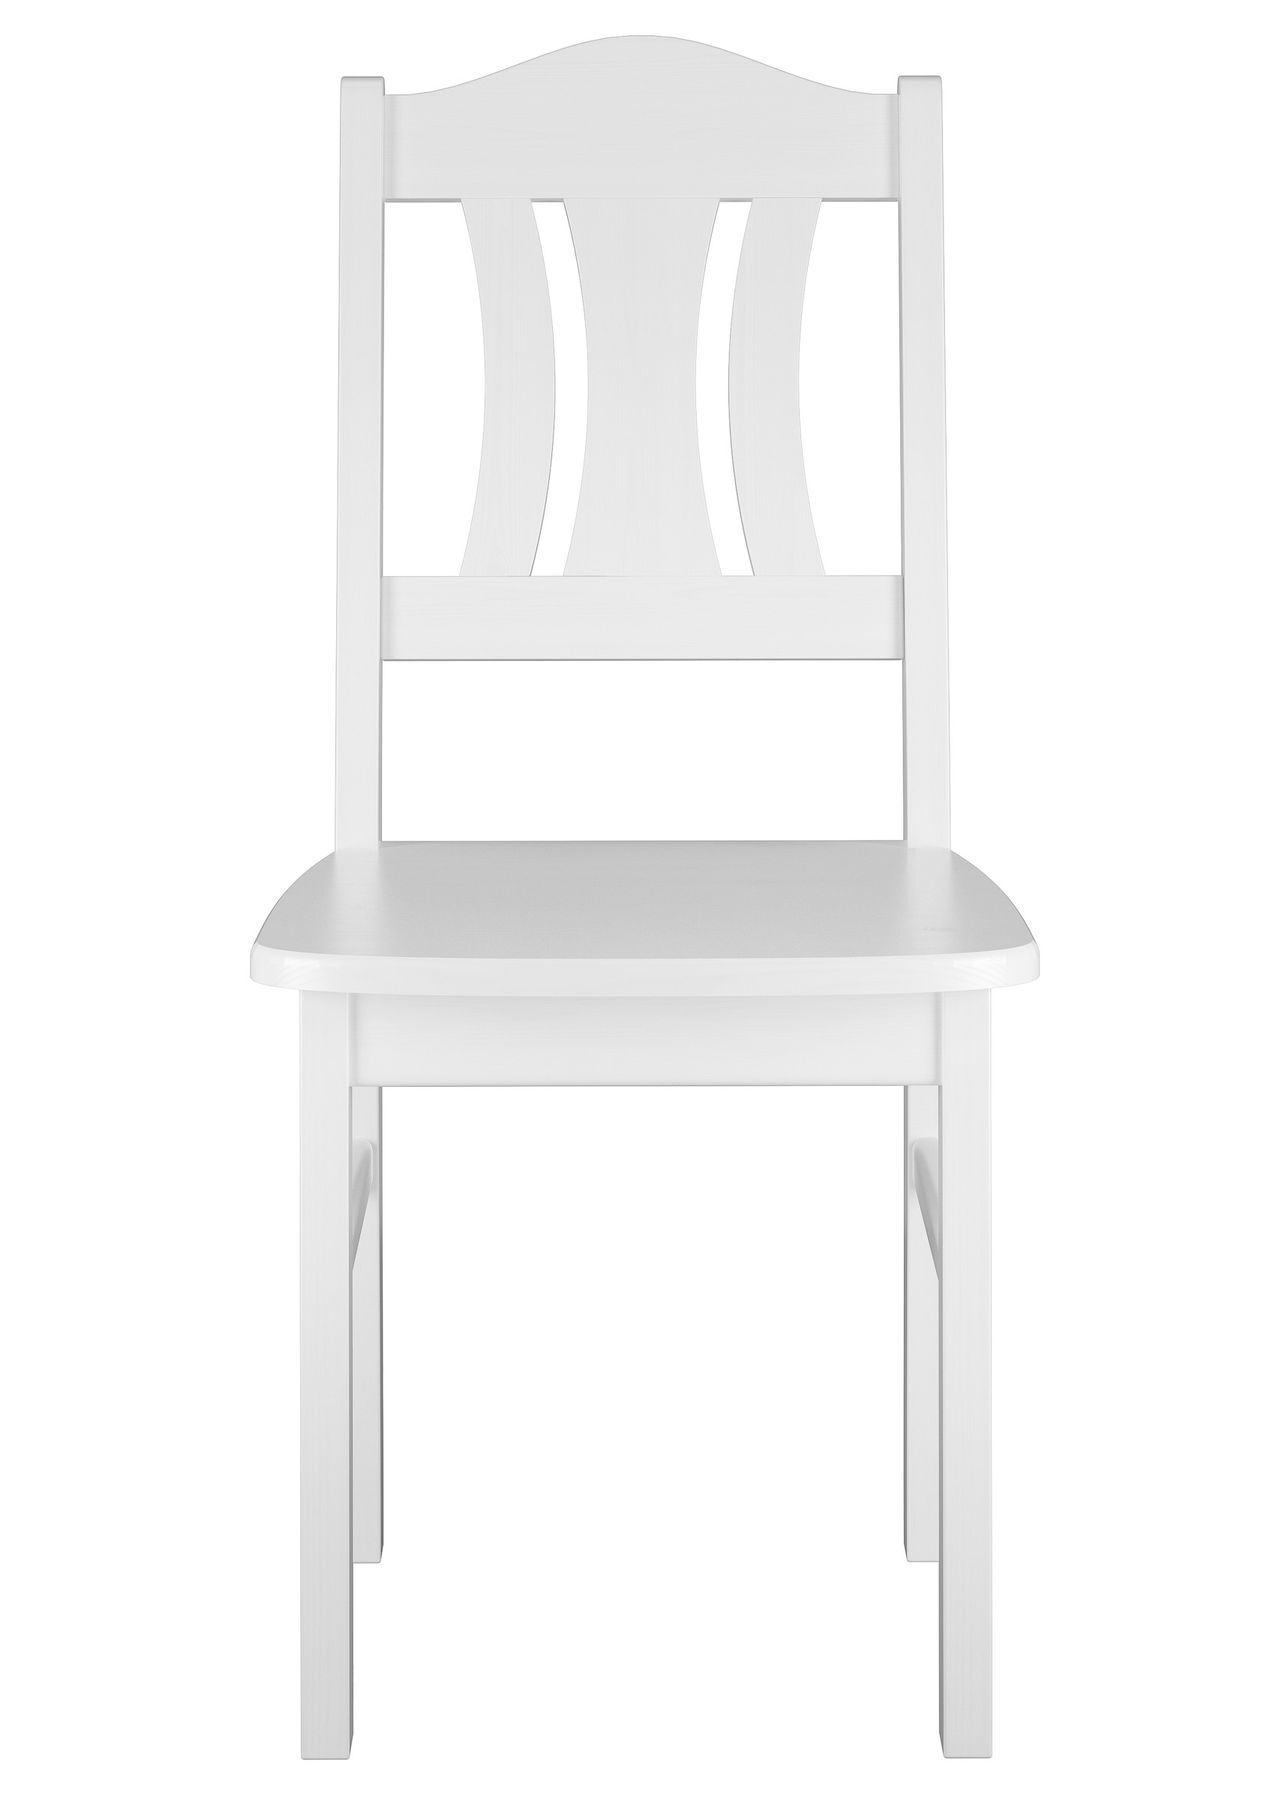 Ansicht weißer Stuhl